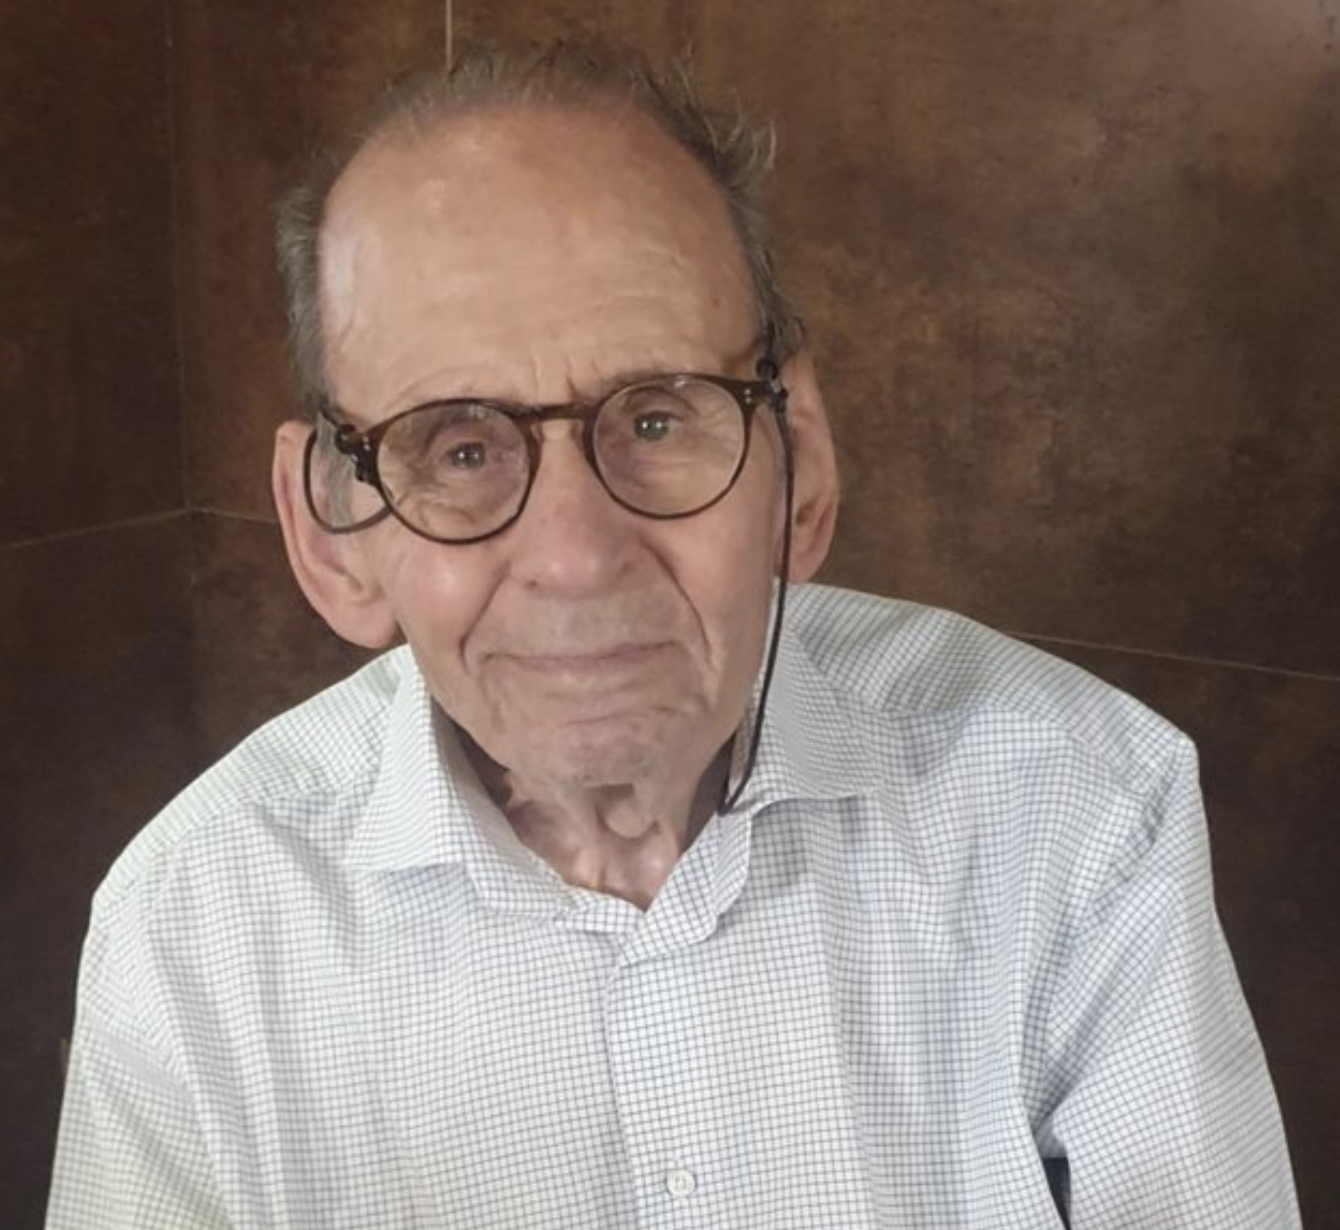 A sus 92 años, Juan Muñoz firmará ejemplares de su nuevo libro el viernes en la Feria de Madrid